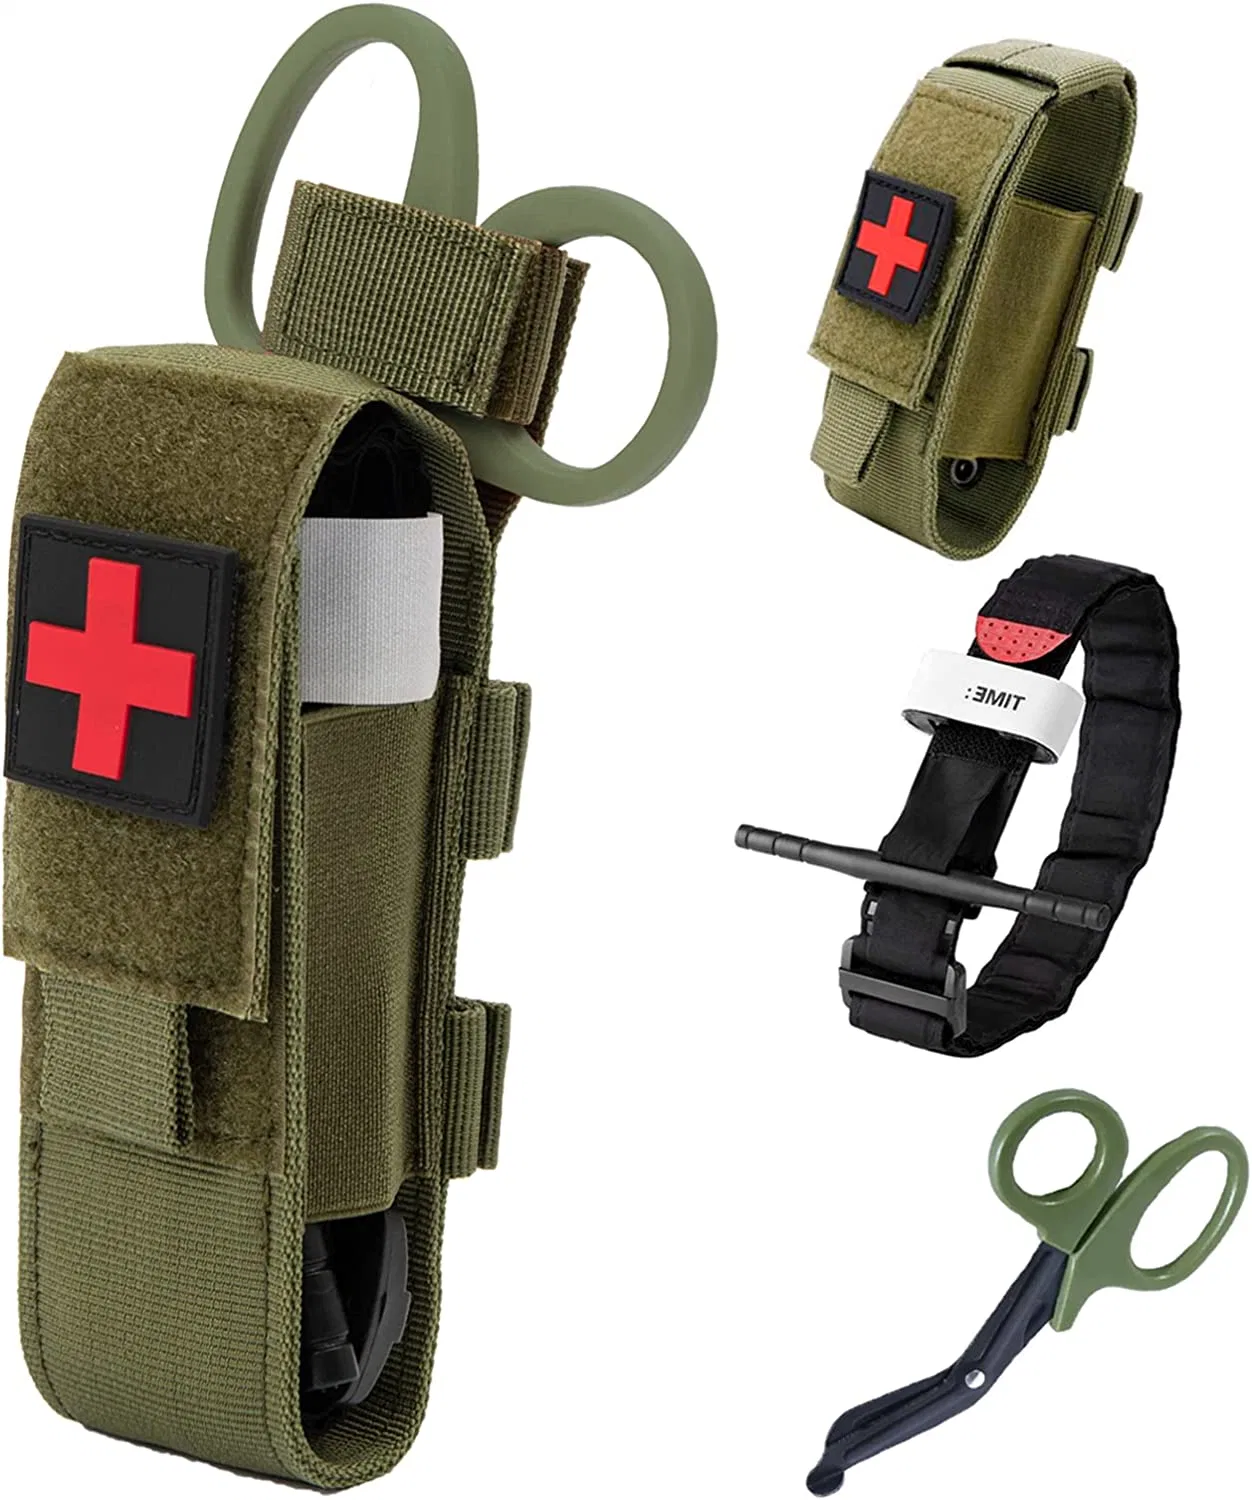 Molle Nylon Ciseaux de traumatologie Sac de rangement EMT Tactique Médical Combat Tourniquet Pochette Support